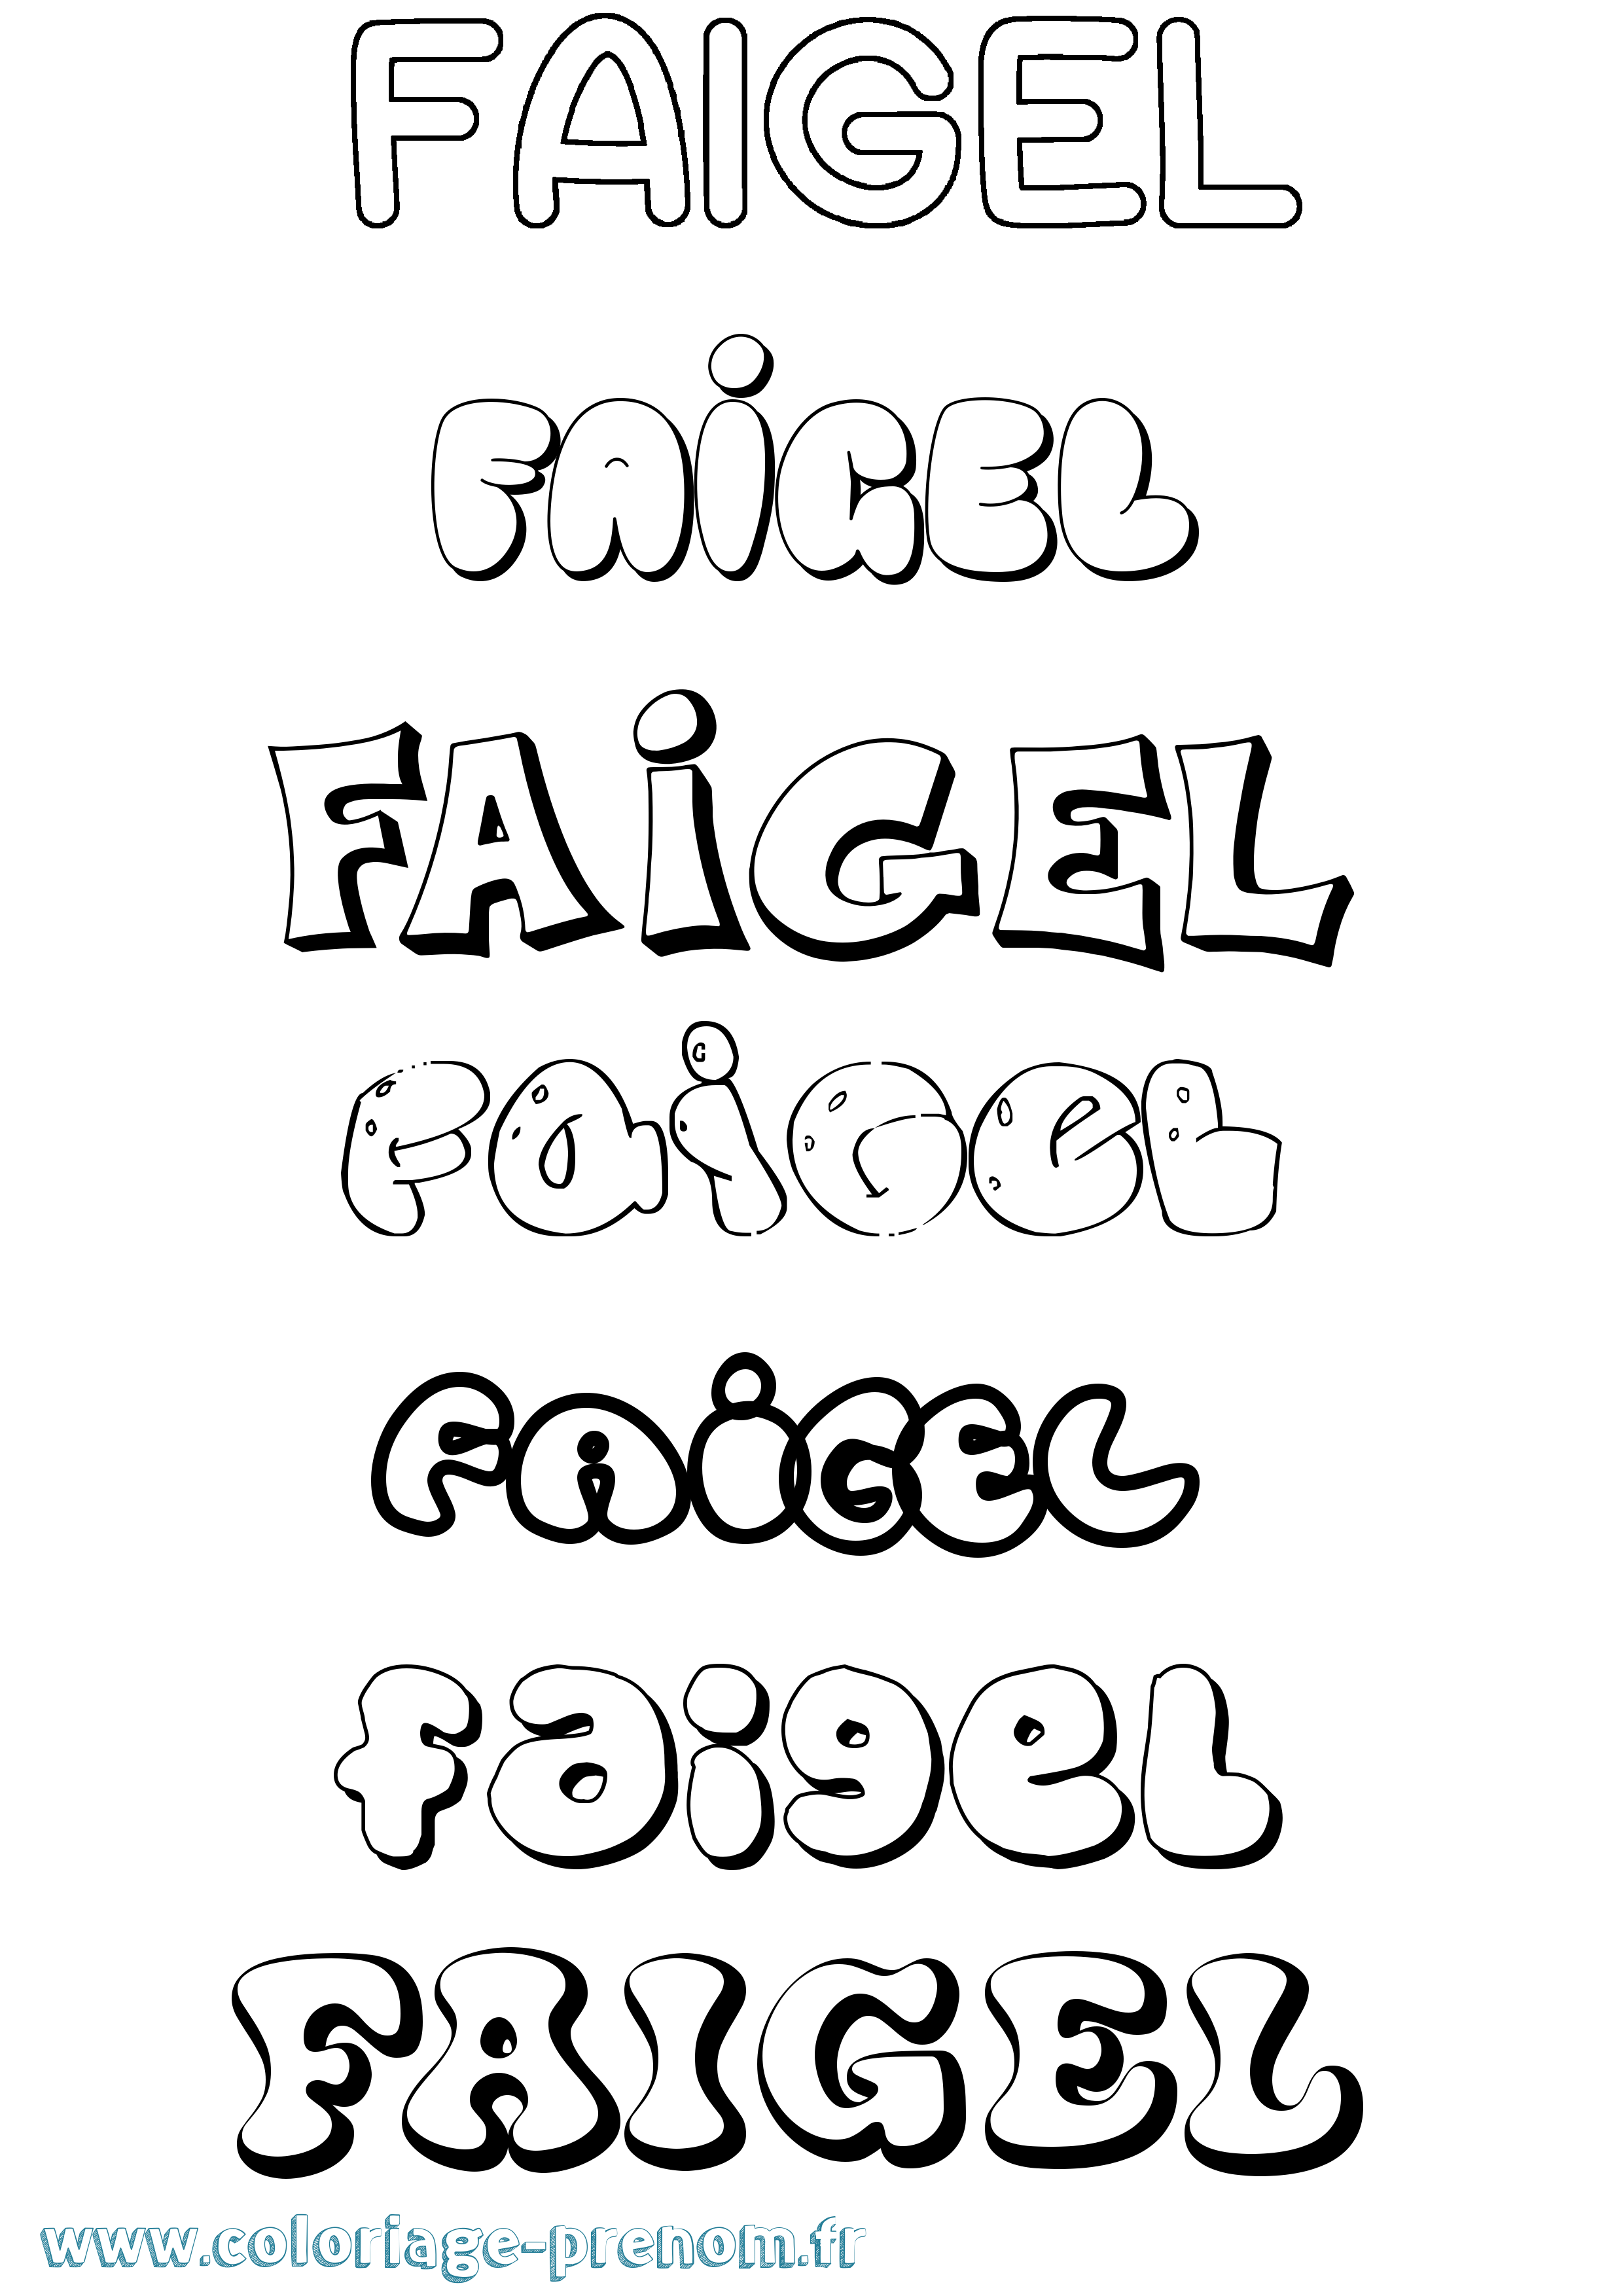 Coloriage prénom Faigel Bubble